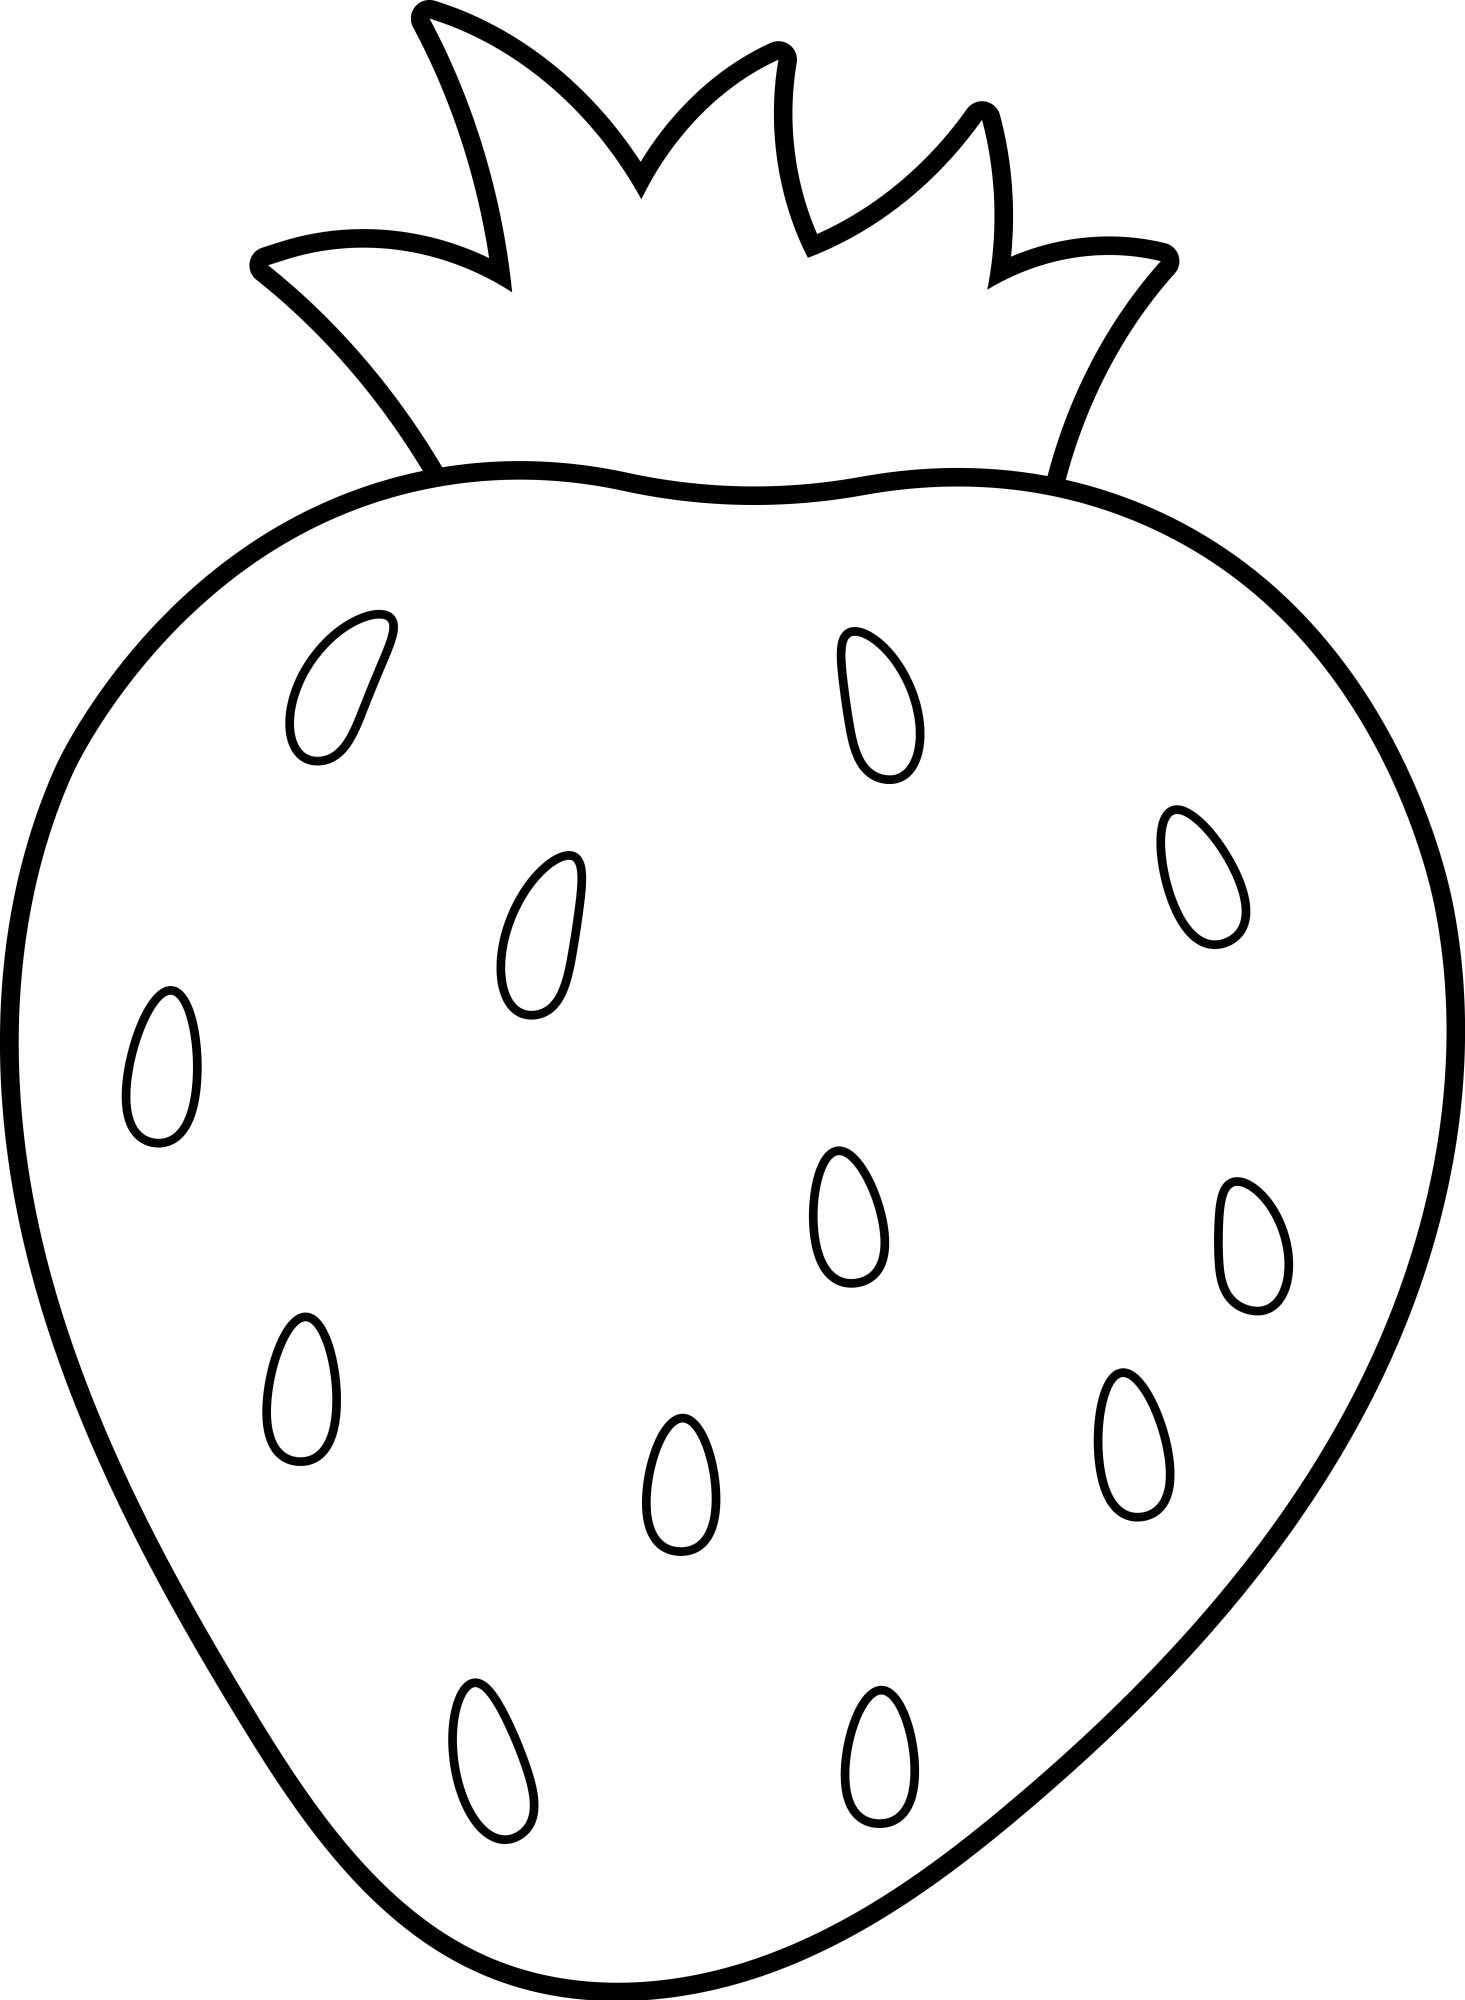 Раскраска для детей: садовая ягода клубника